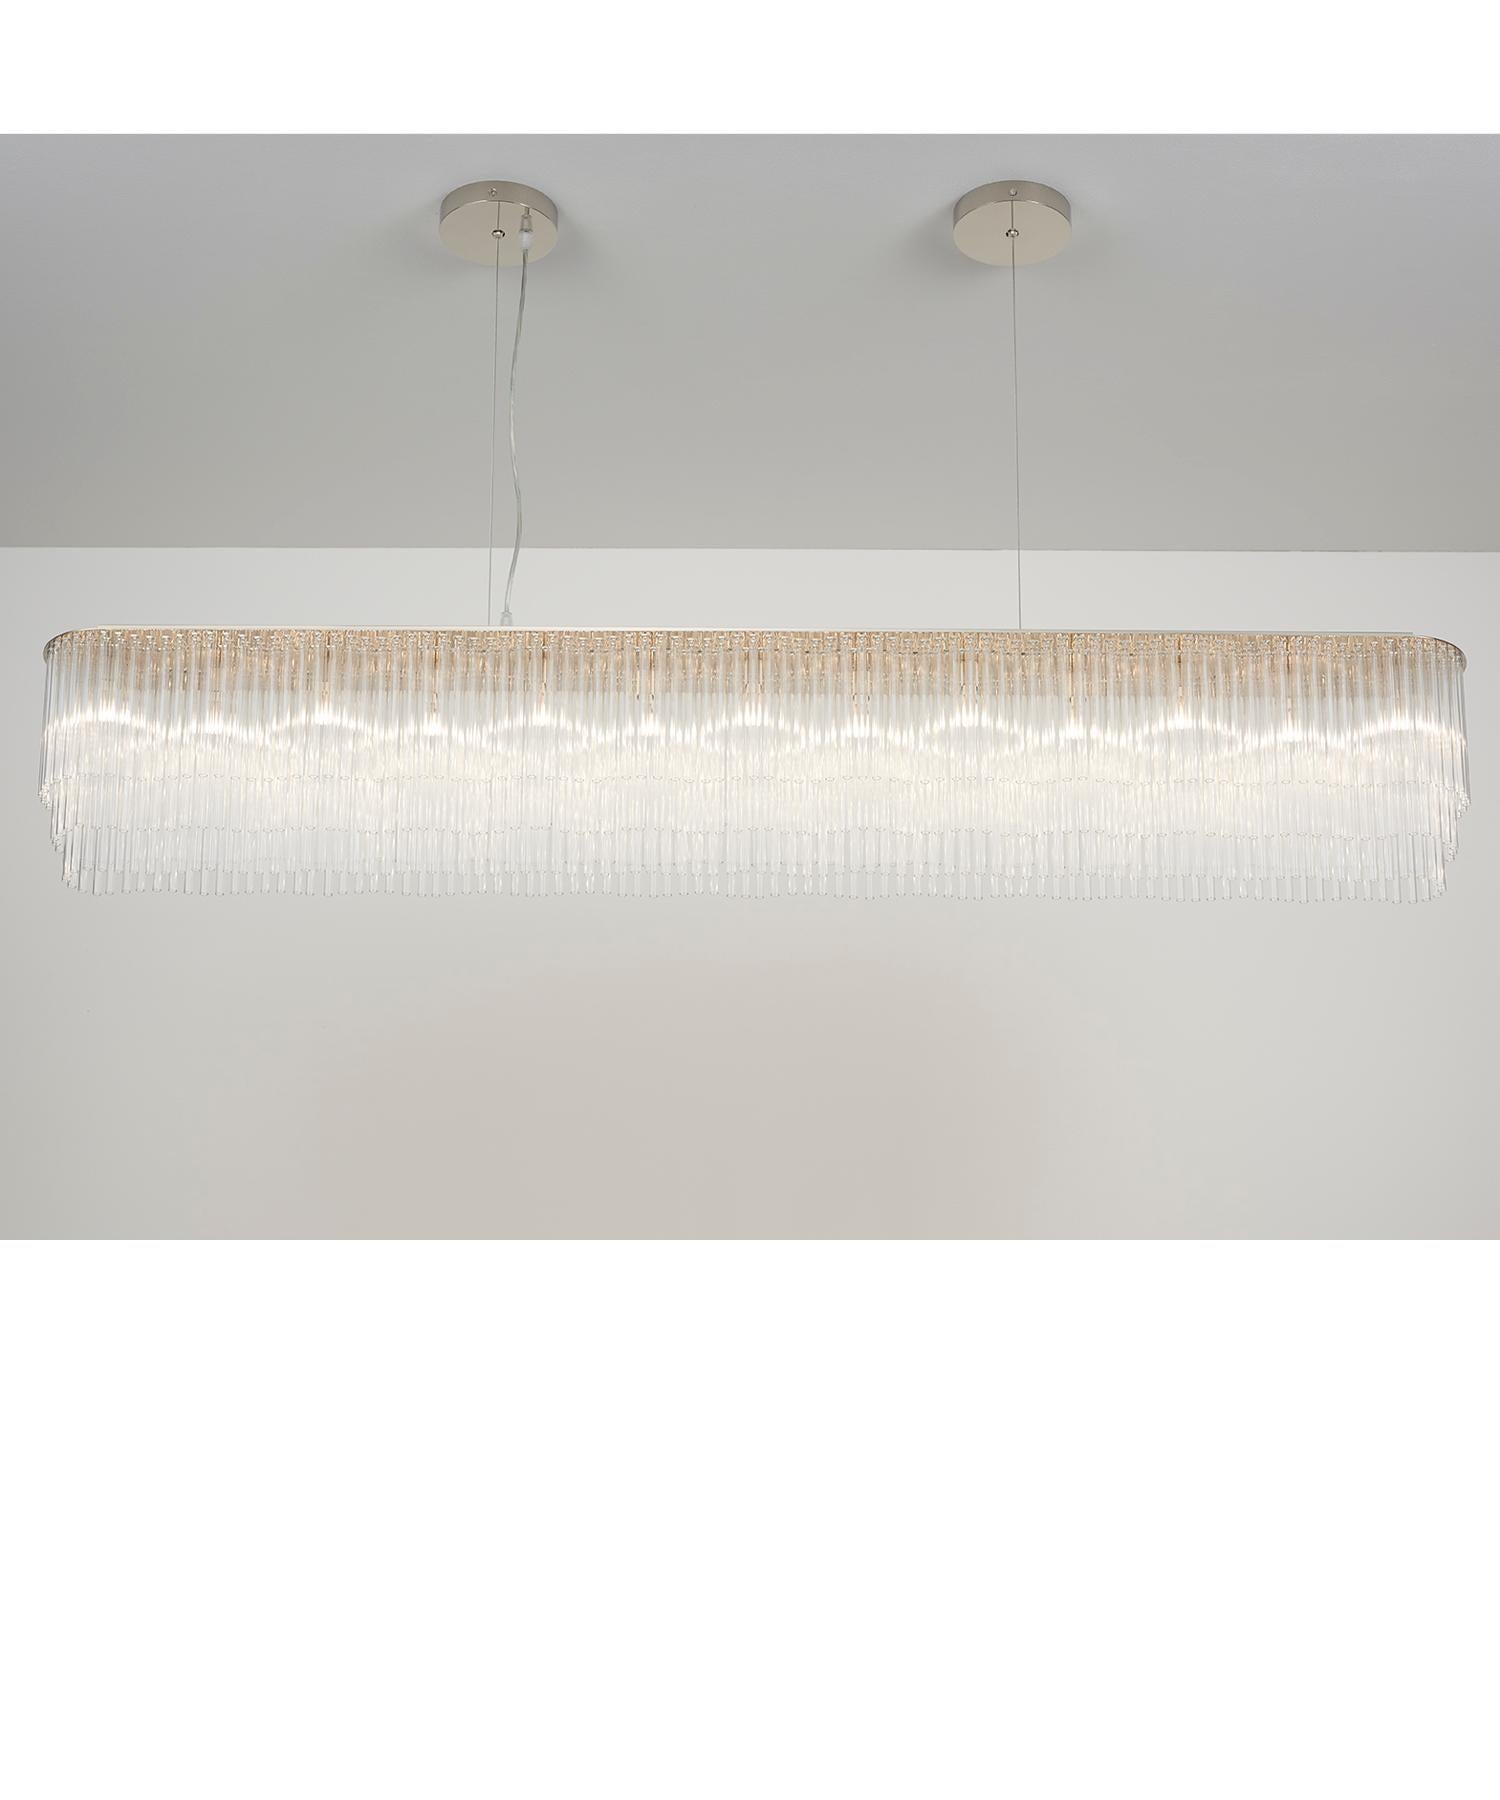 Für Innenräume, die eine minimalistischere Leuchte erfordern, ist der Linear Chandelier Thin eine großartige, leichte Alternative zum Linear Chandelier. Sie eignet sich ebenso gut zum Aufhängen in offenen Räumen oder als zentrales Element über